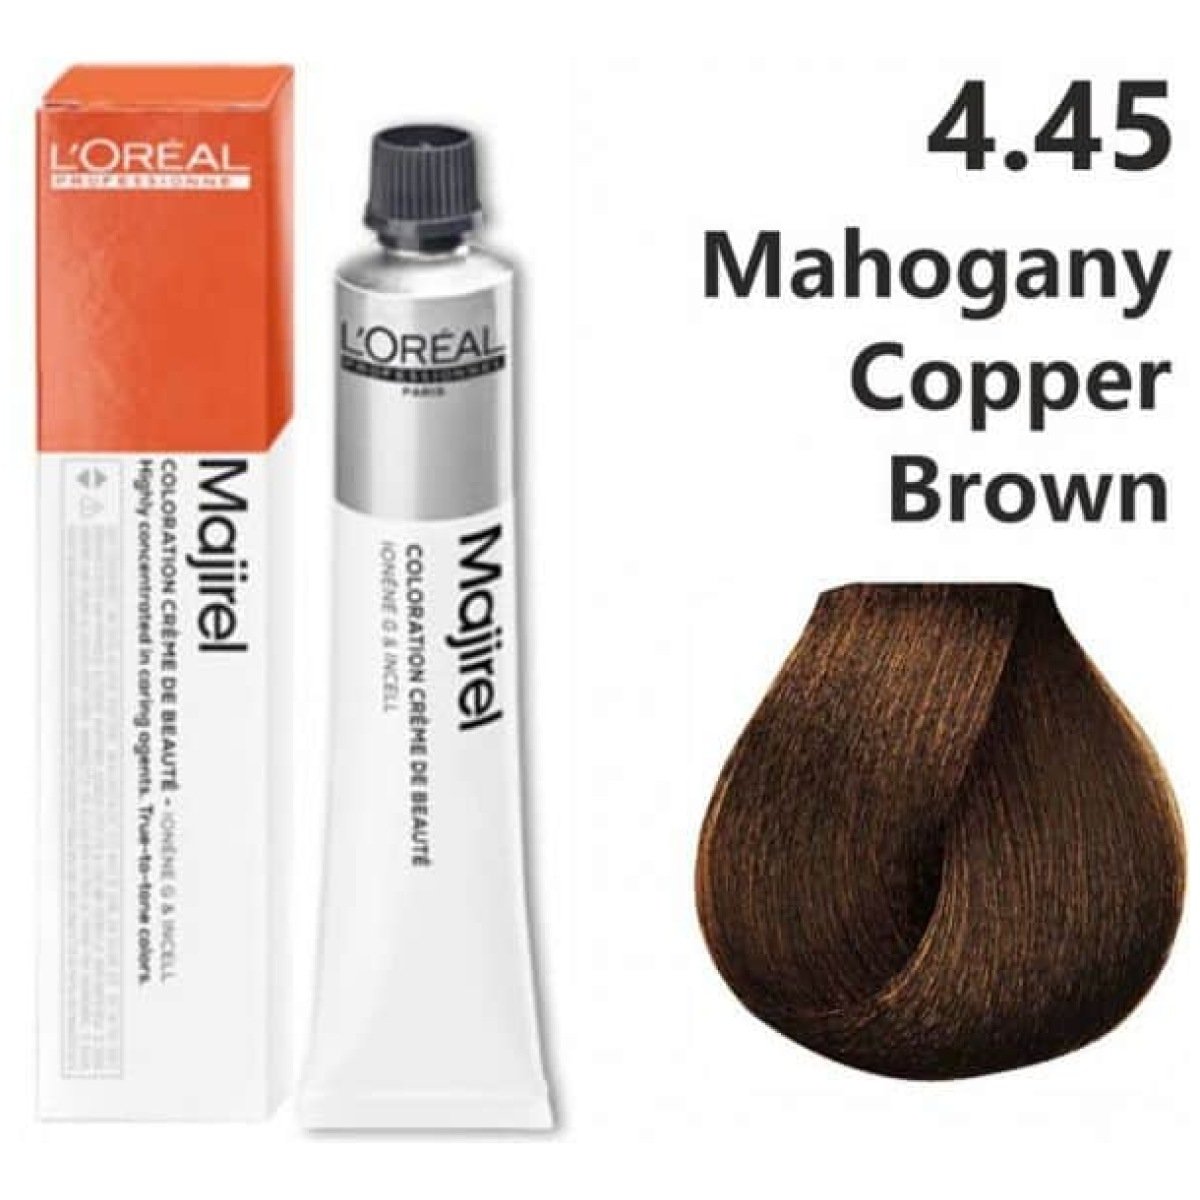 L'Oreal Professionnel Majirel Hair Color 50G 4.45 Mahogany Copper Brown